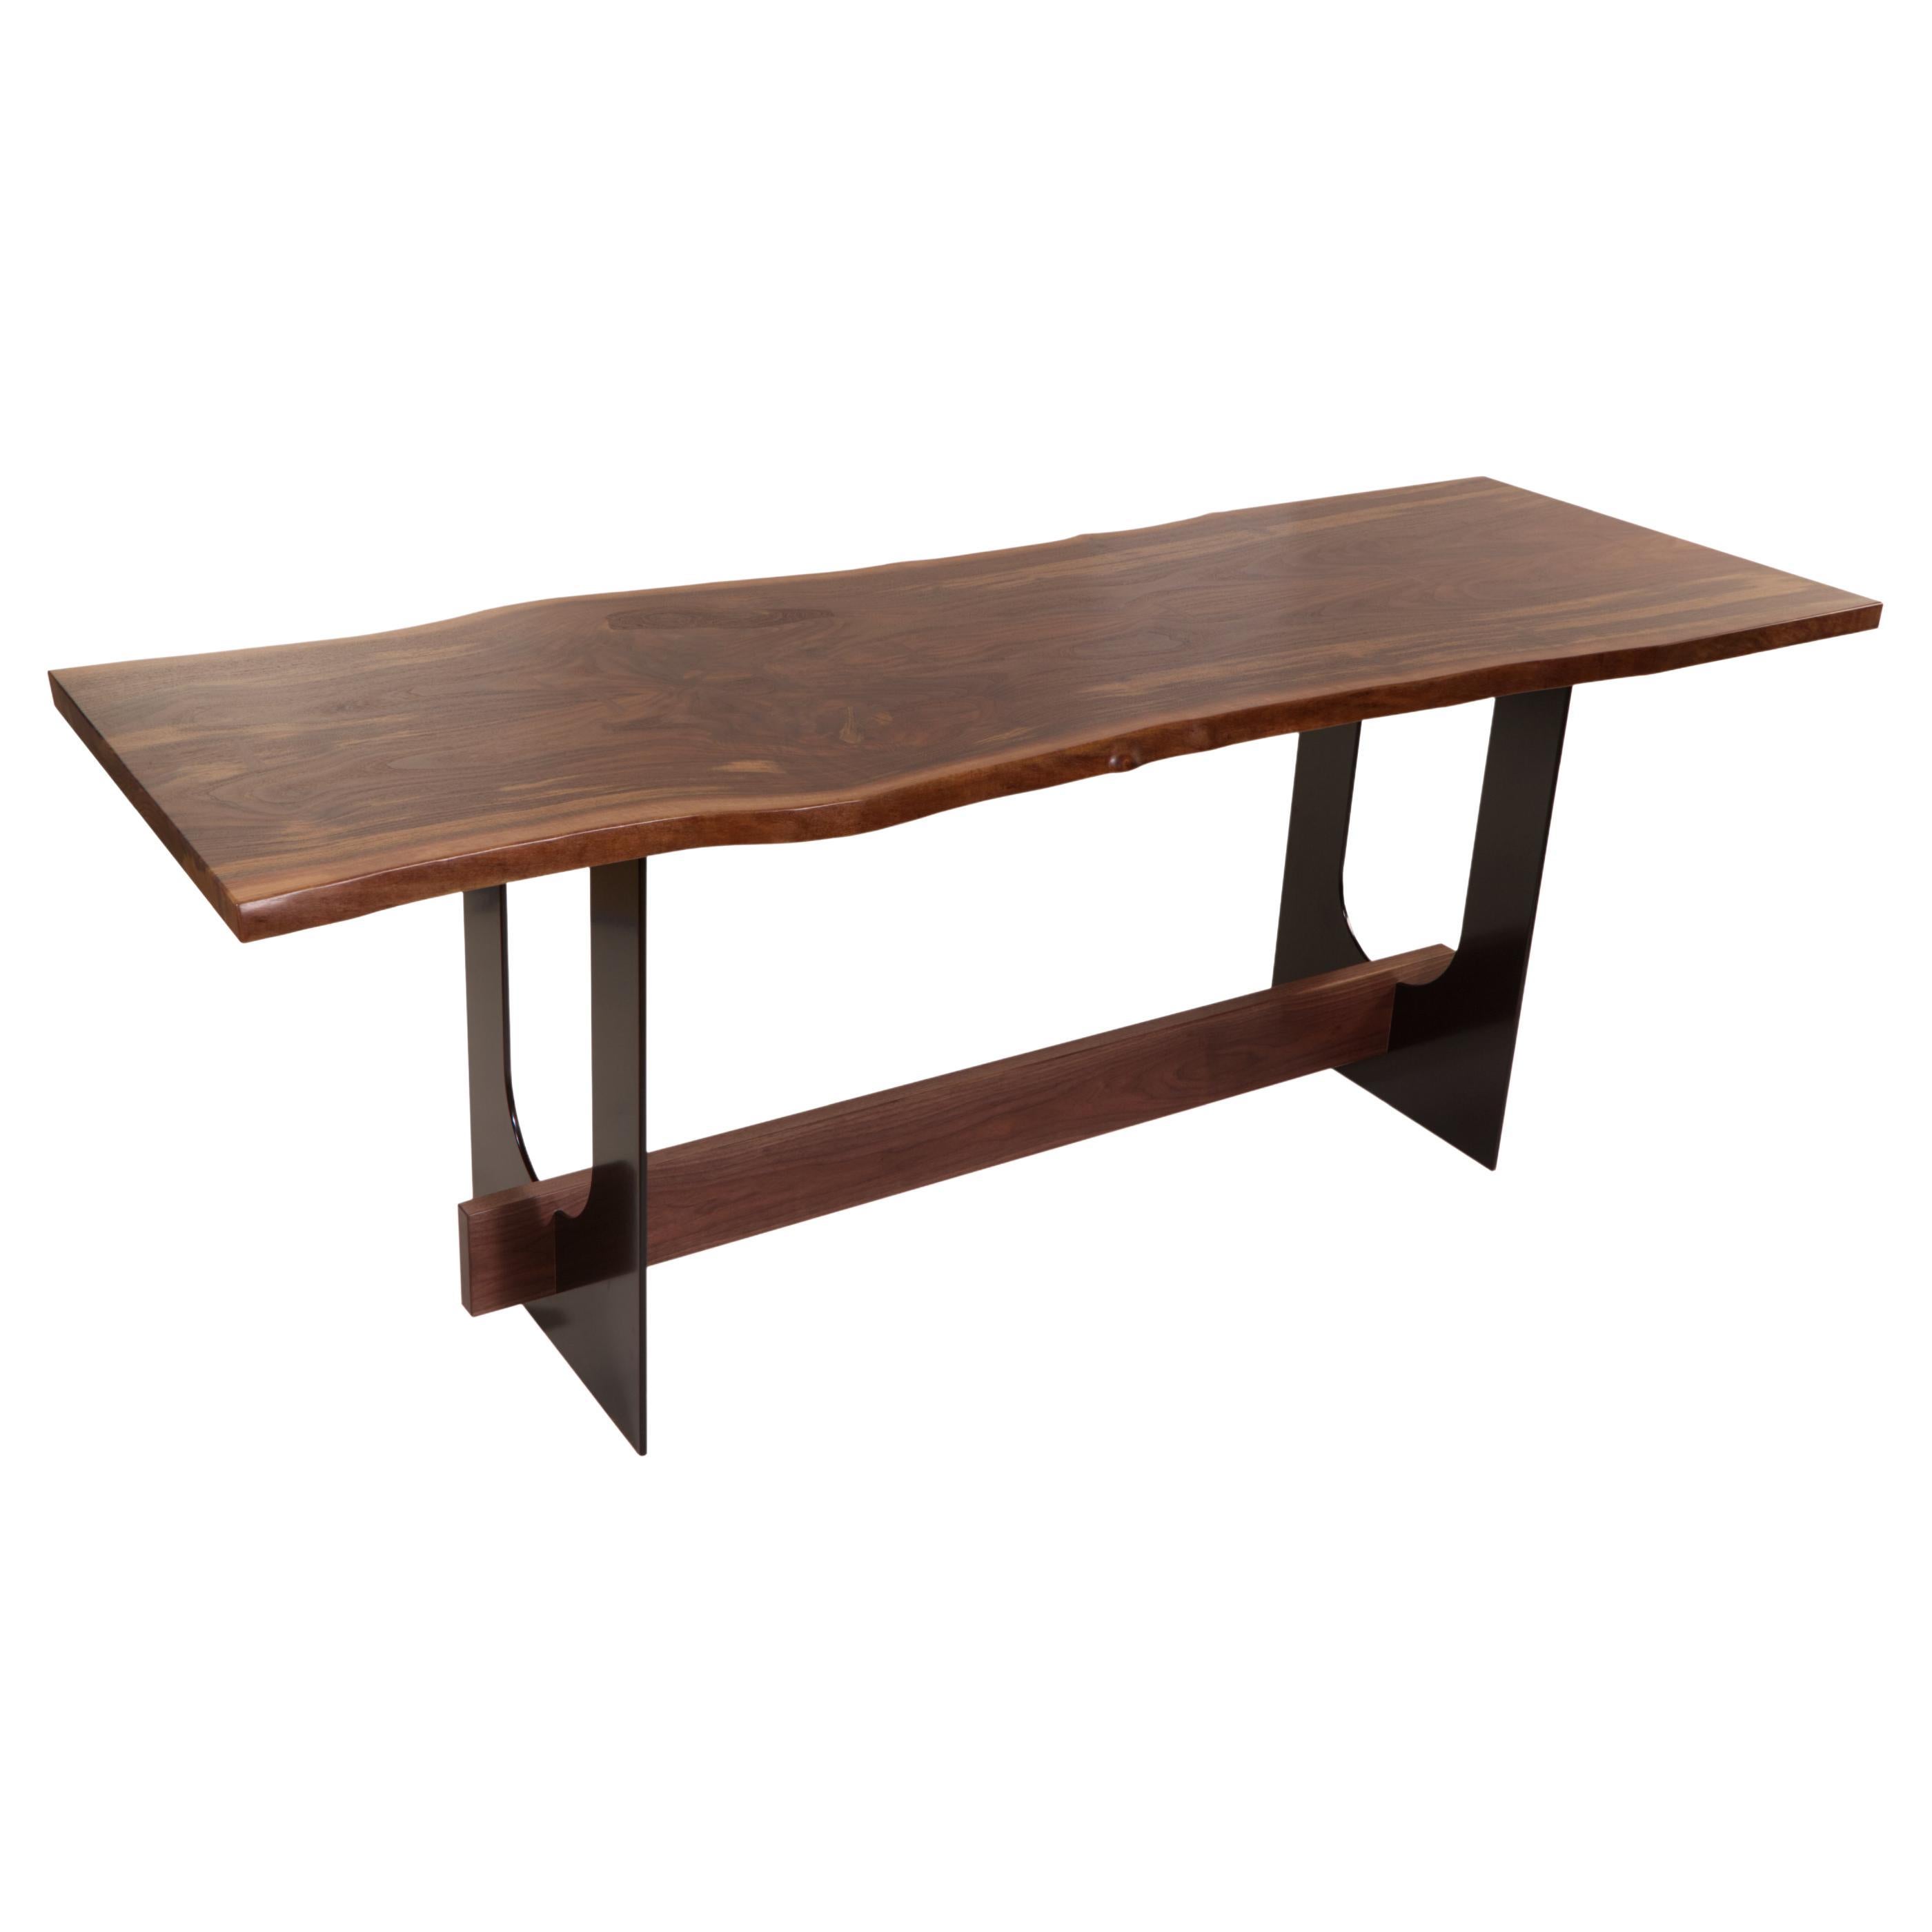 Industrielle et raffinée, ces deux mots décrivent parfaitement la table Menlo. Avec un plateau en beau noyer reposant sur une paire de pieds en acier massif, ce design simple s'adapte à tous les espaces, des plus contemporains aux plus rustiques.